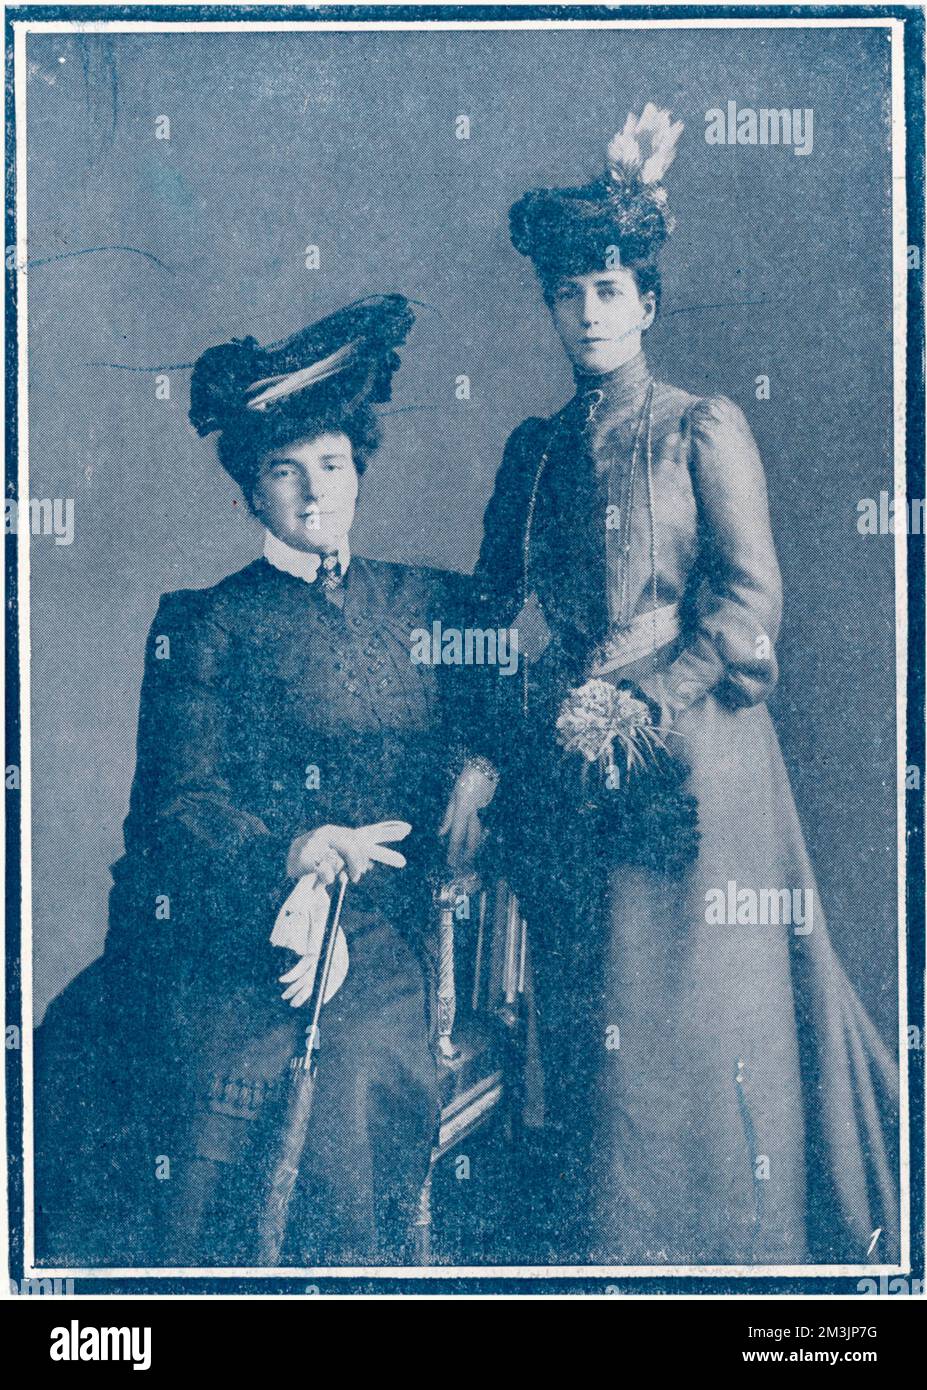 AMELIE, REGINA DEL PORTOGALLO la regina Amelie (1865 - 1951), moglie del re Carlos i del Portogallo, raffigurata insieme alla regina Alexandra. I due erano grandi amici. Data: 1908 Foto Stock